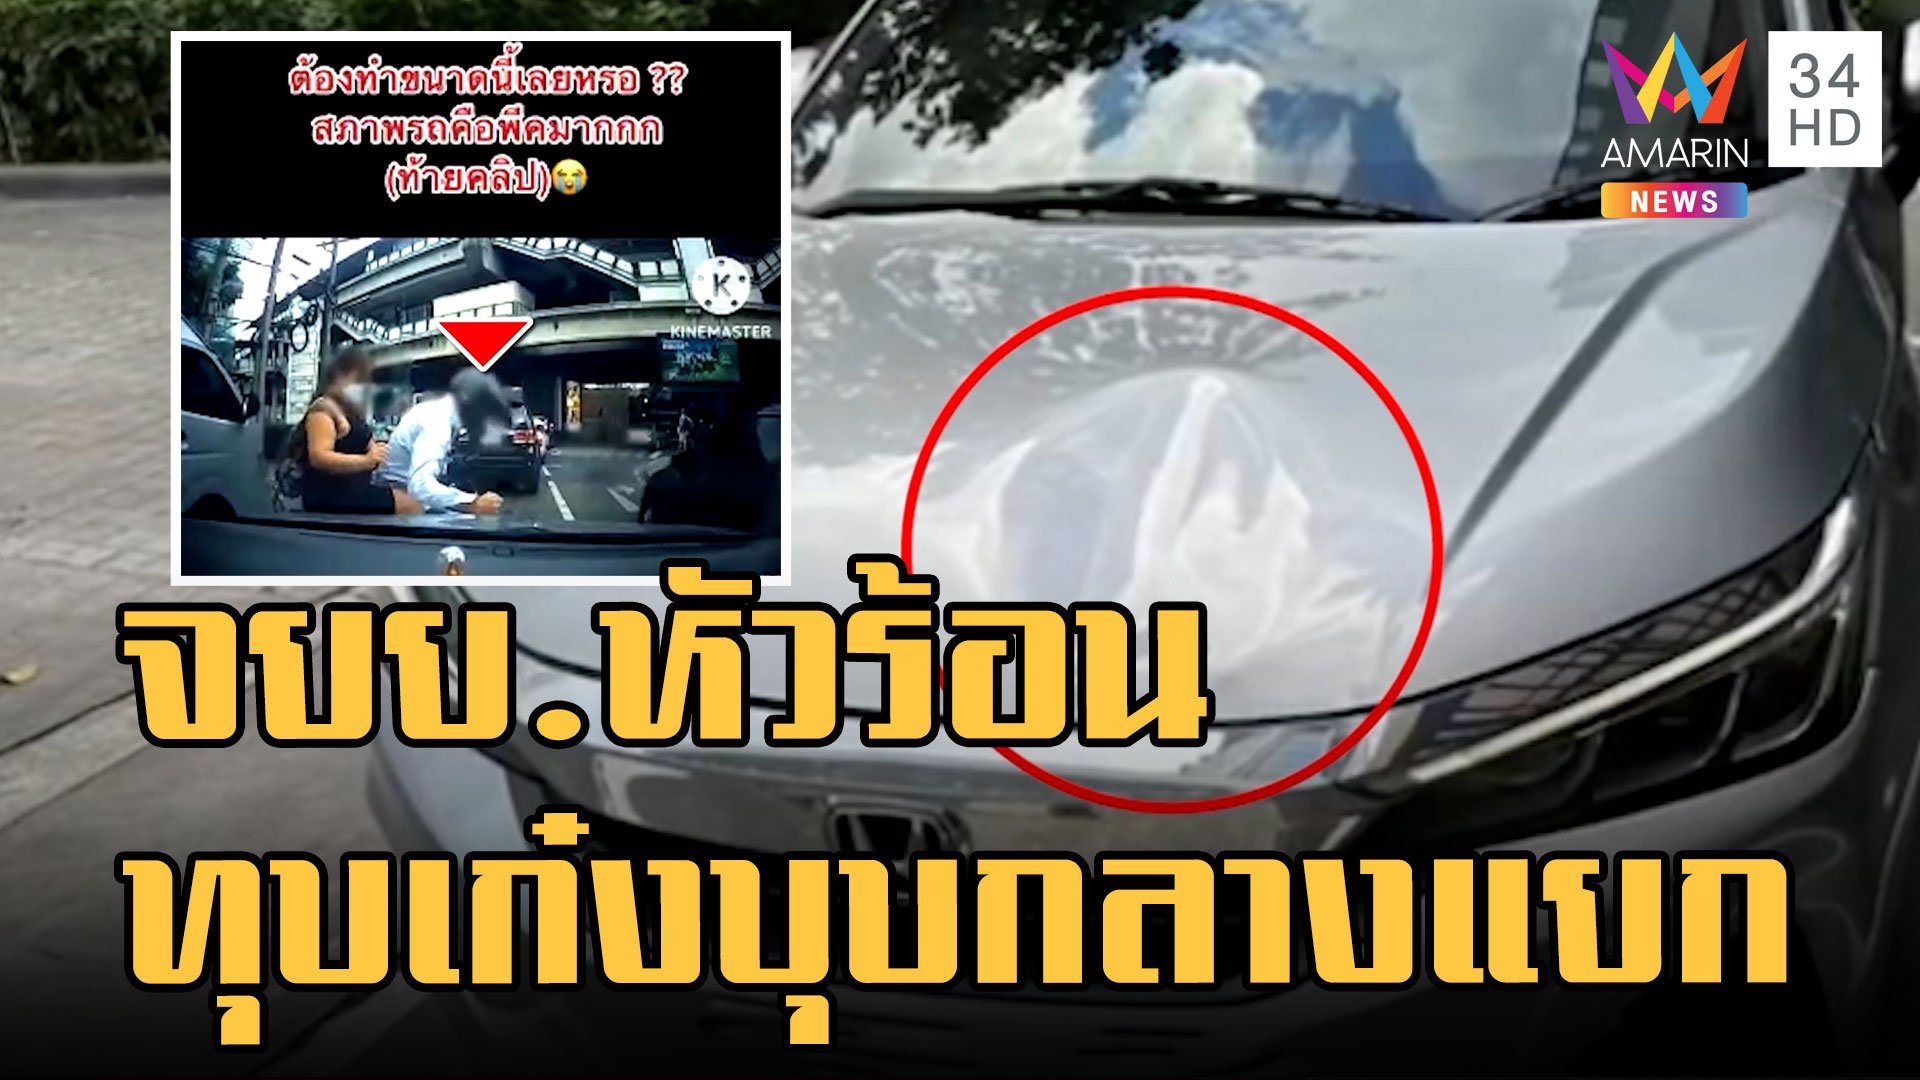 จยย.หัวร้อนขับเบียดทุบรถเก๋งกลางแยก | ข่าวเที่ยงอมรินทร์ | 28 พ.ย. 65 | AMARIN TVHD34